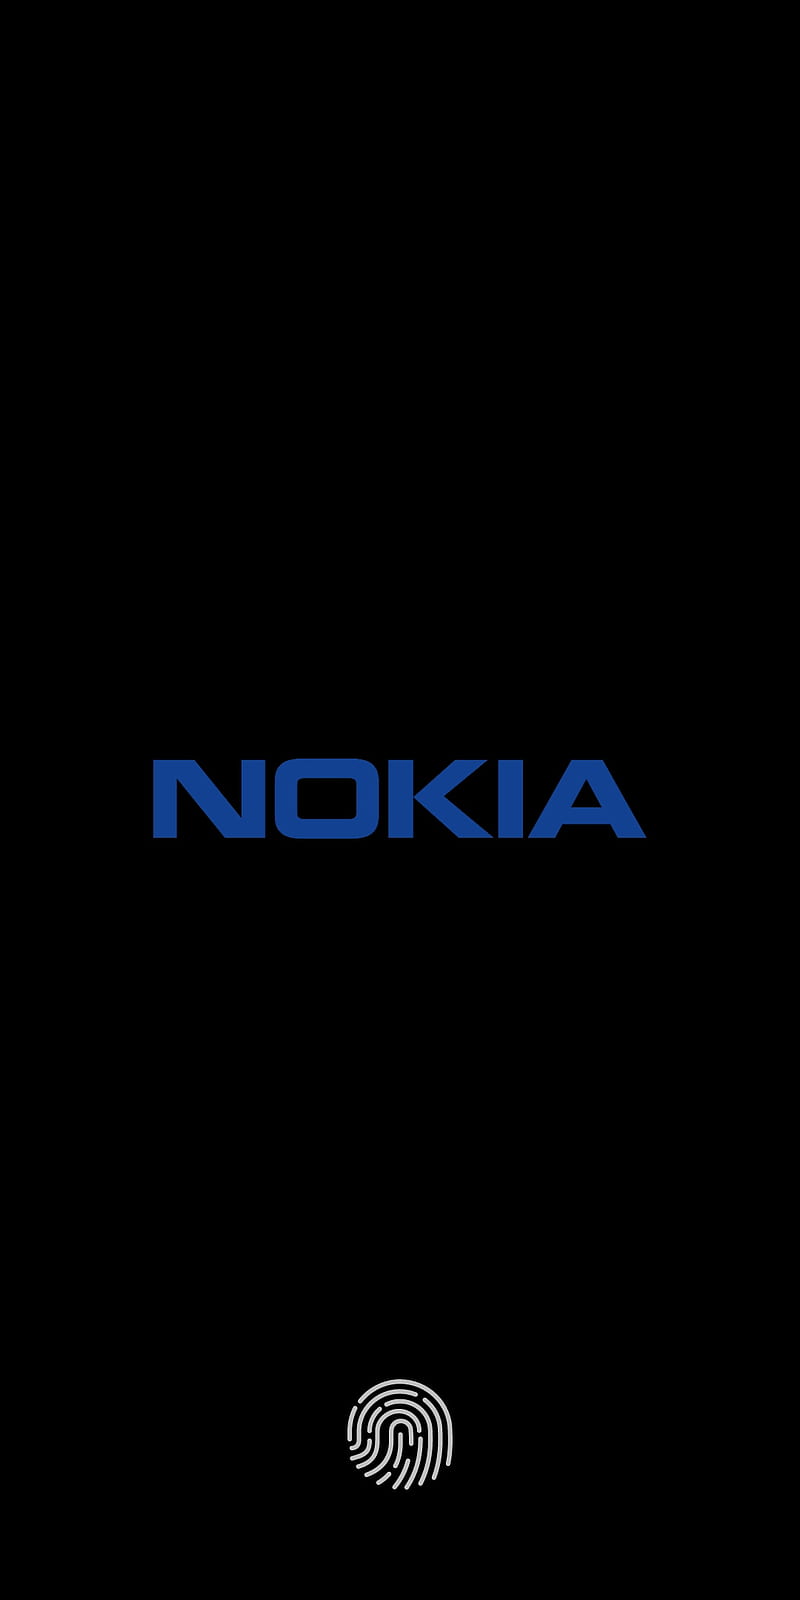 Sở hữu điện thoại Nokia và muốn trang trí giao diện theo phong cách của bạn? Không còn phải lo lắng vì bộ themes đẹp mắt đang chờ bạn tại đây. Hãy khám phá ngay để biến chiếc điện thoại Nokia của bạn trở nên độc đáo và cá tính hơn bao giờ hết!